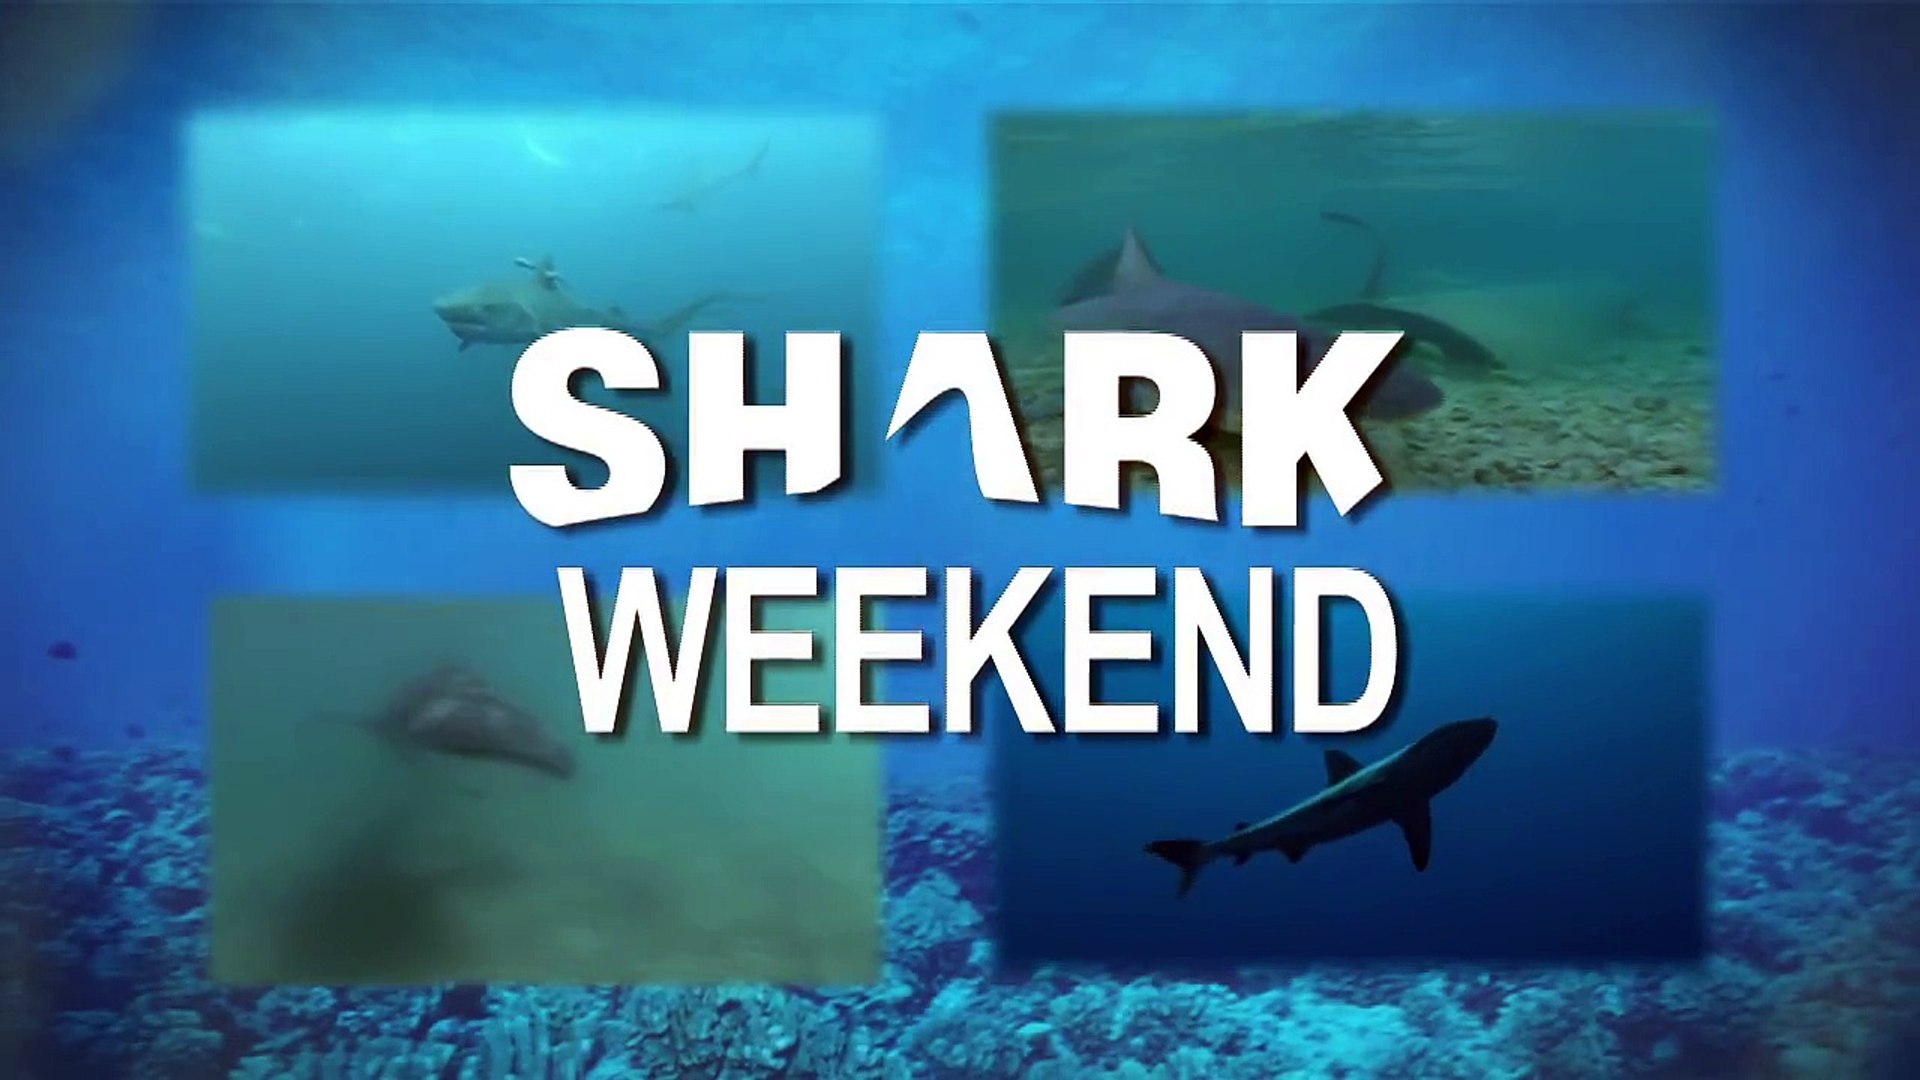 Shark Weekend - Whale Shark